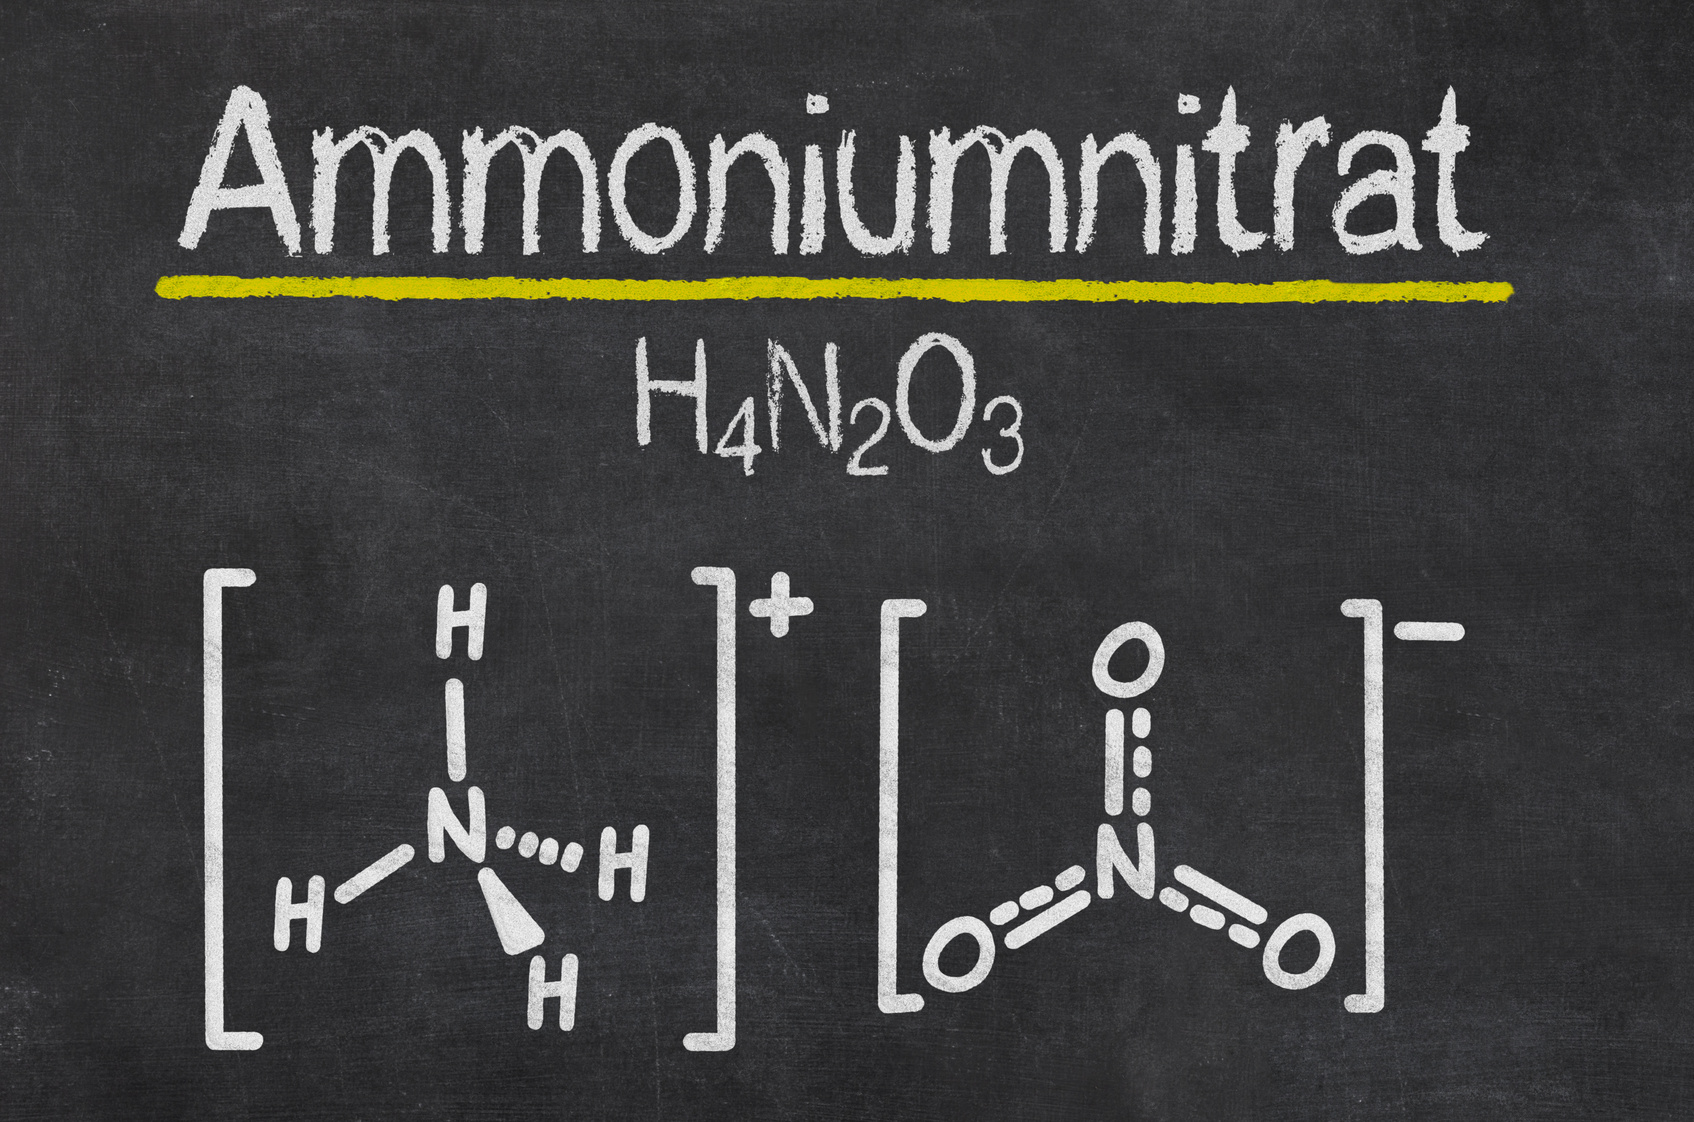 Die Formel für Ammoniumnitrat